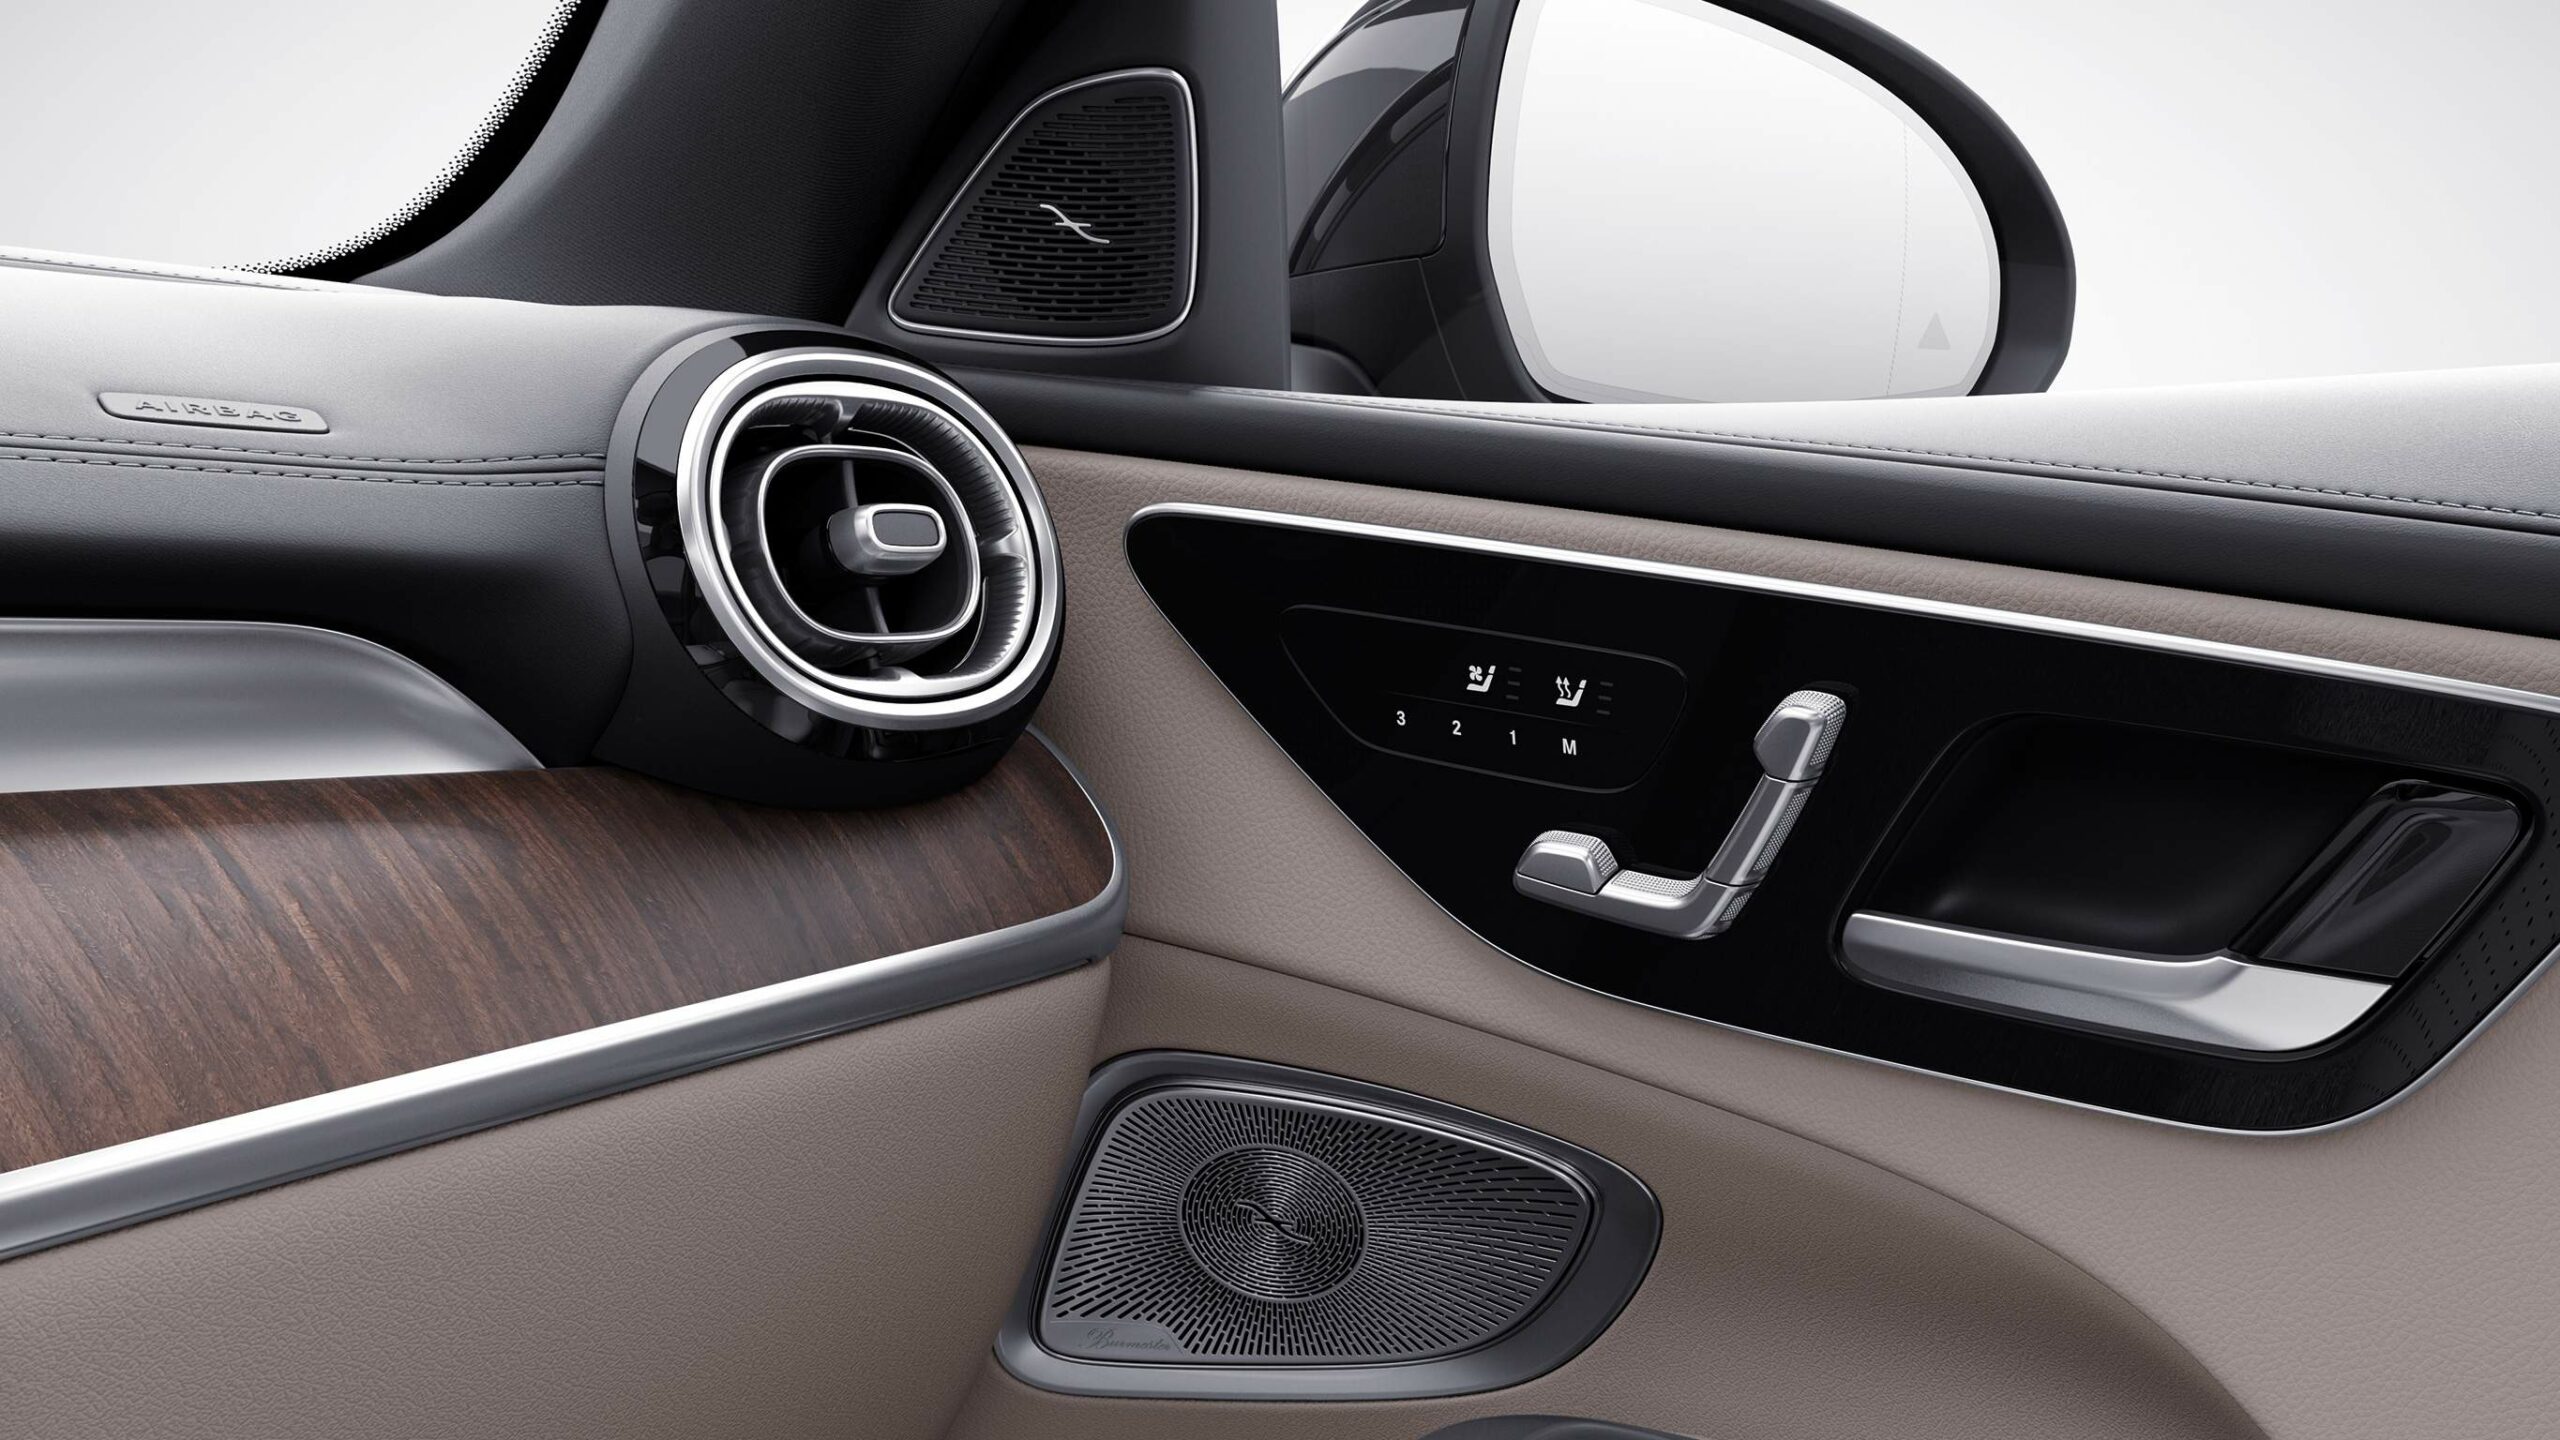 Detalles del diseño y confort dentro de la lujosa Clase C Sedan de Mercedes-Benz